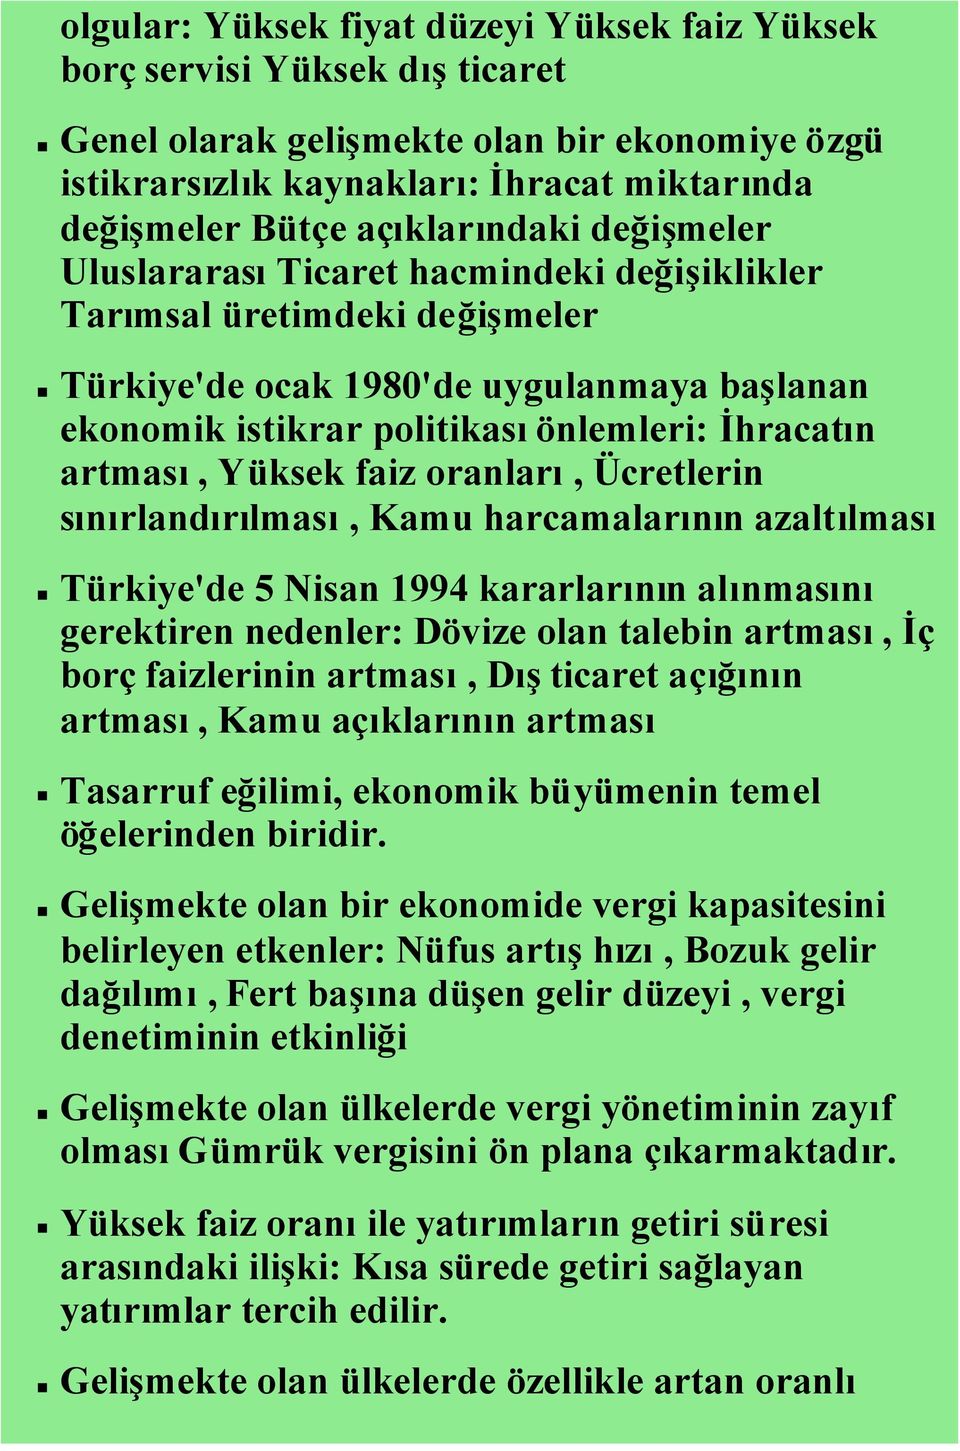 artması, Yüksek faiz oranları, Ücretlerin sınırlandırılması, Kamu harcamalarının azaltılması Türkiye'de 5 Nisan 1994 kararlarının alınmasını gerektiren nedenler: Dövize olan talebin artması, İç borç